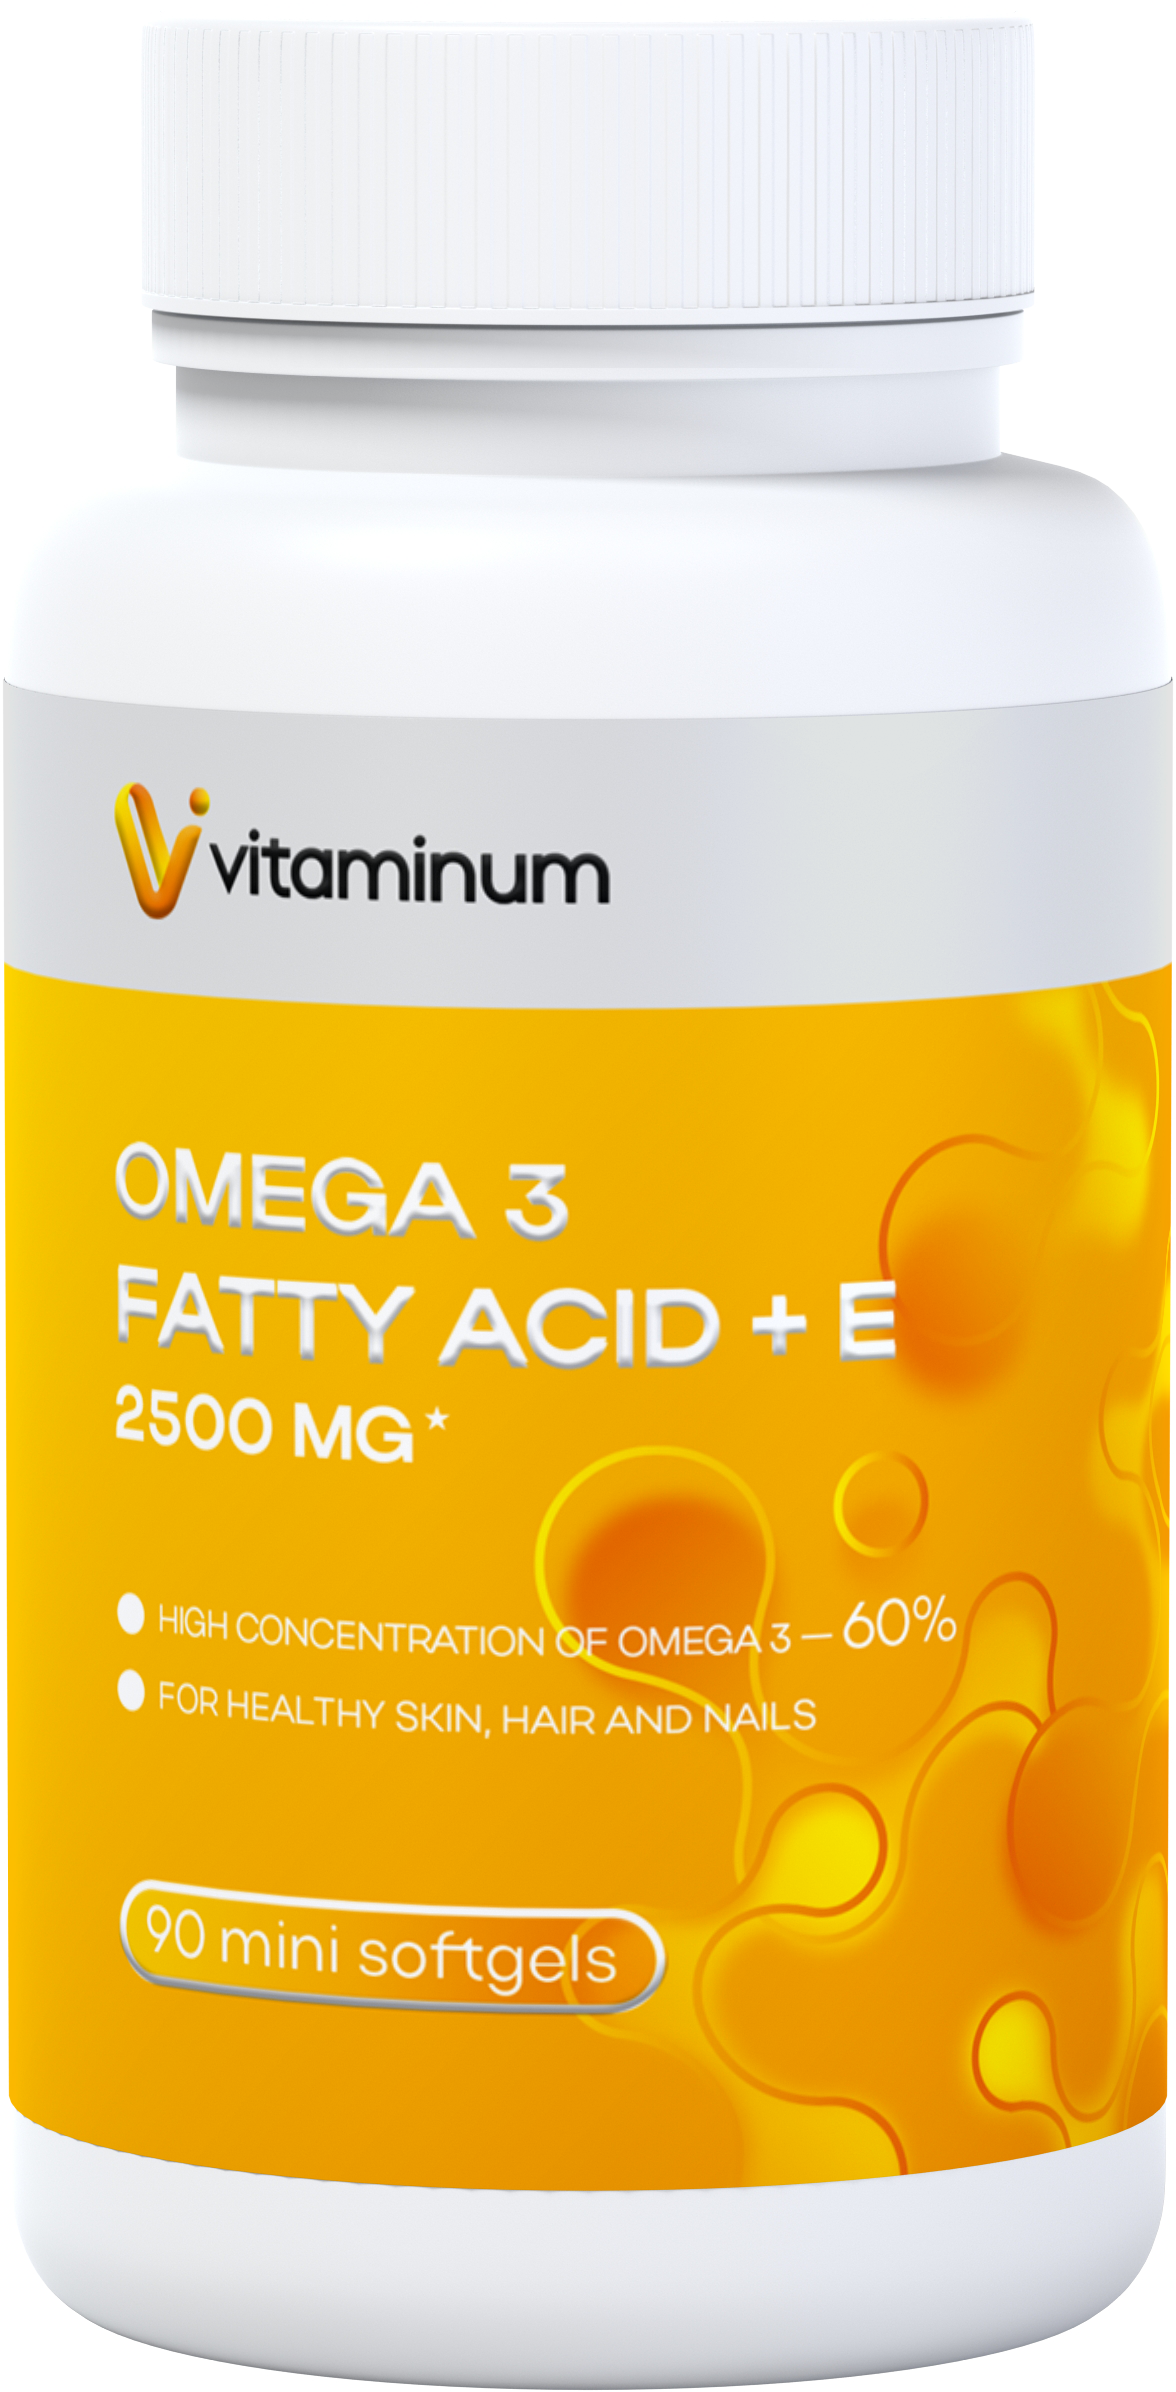  Vitaminum ОМЕГА 3 60% + витамин Е (2500 MG*) 90 капсул 700 мг   в Иванове